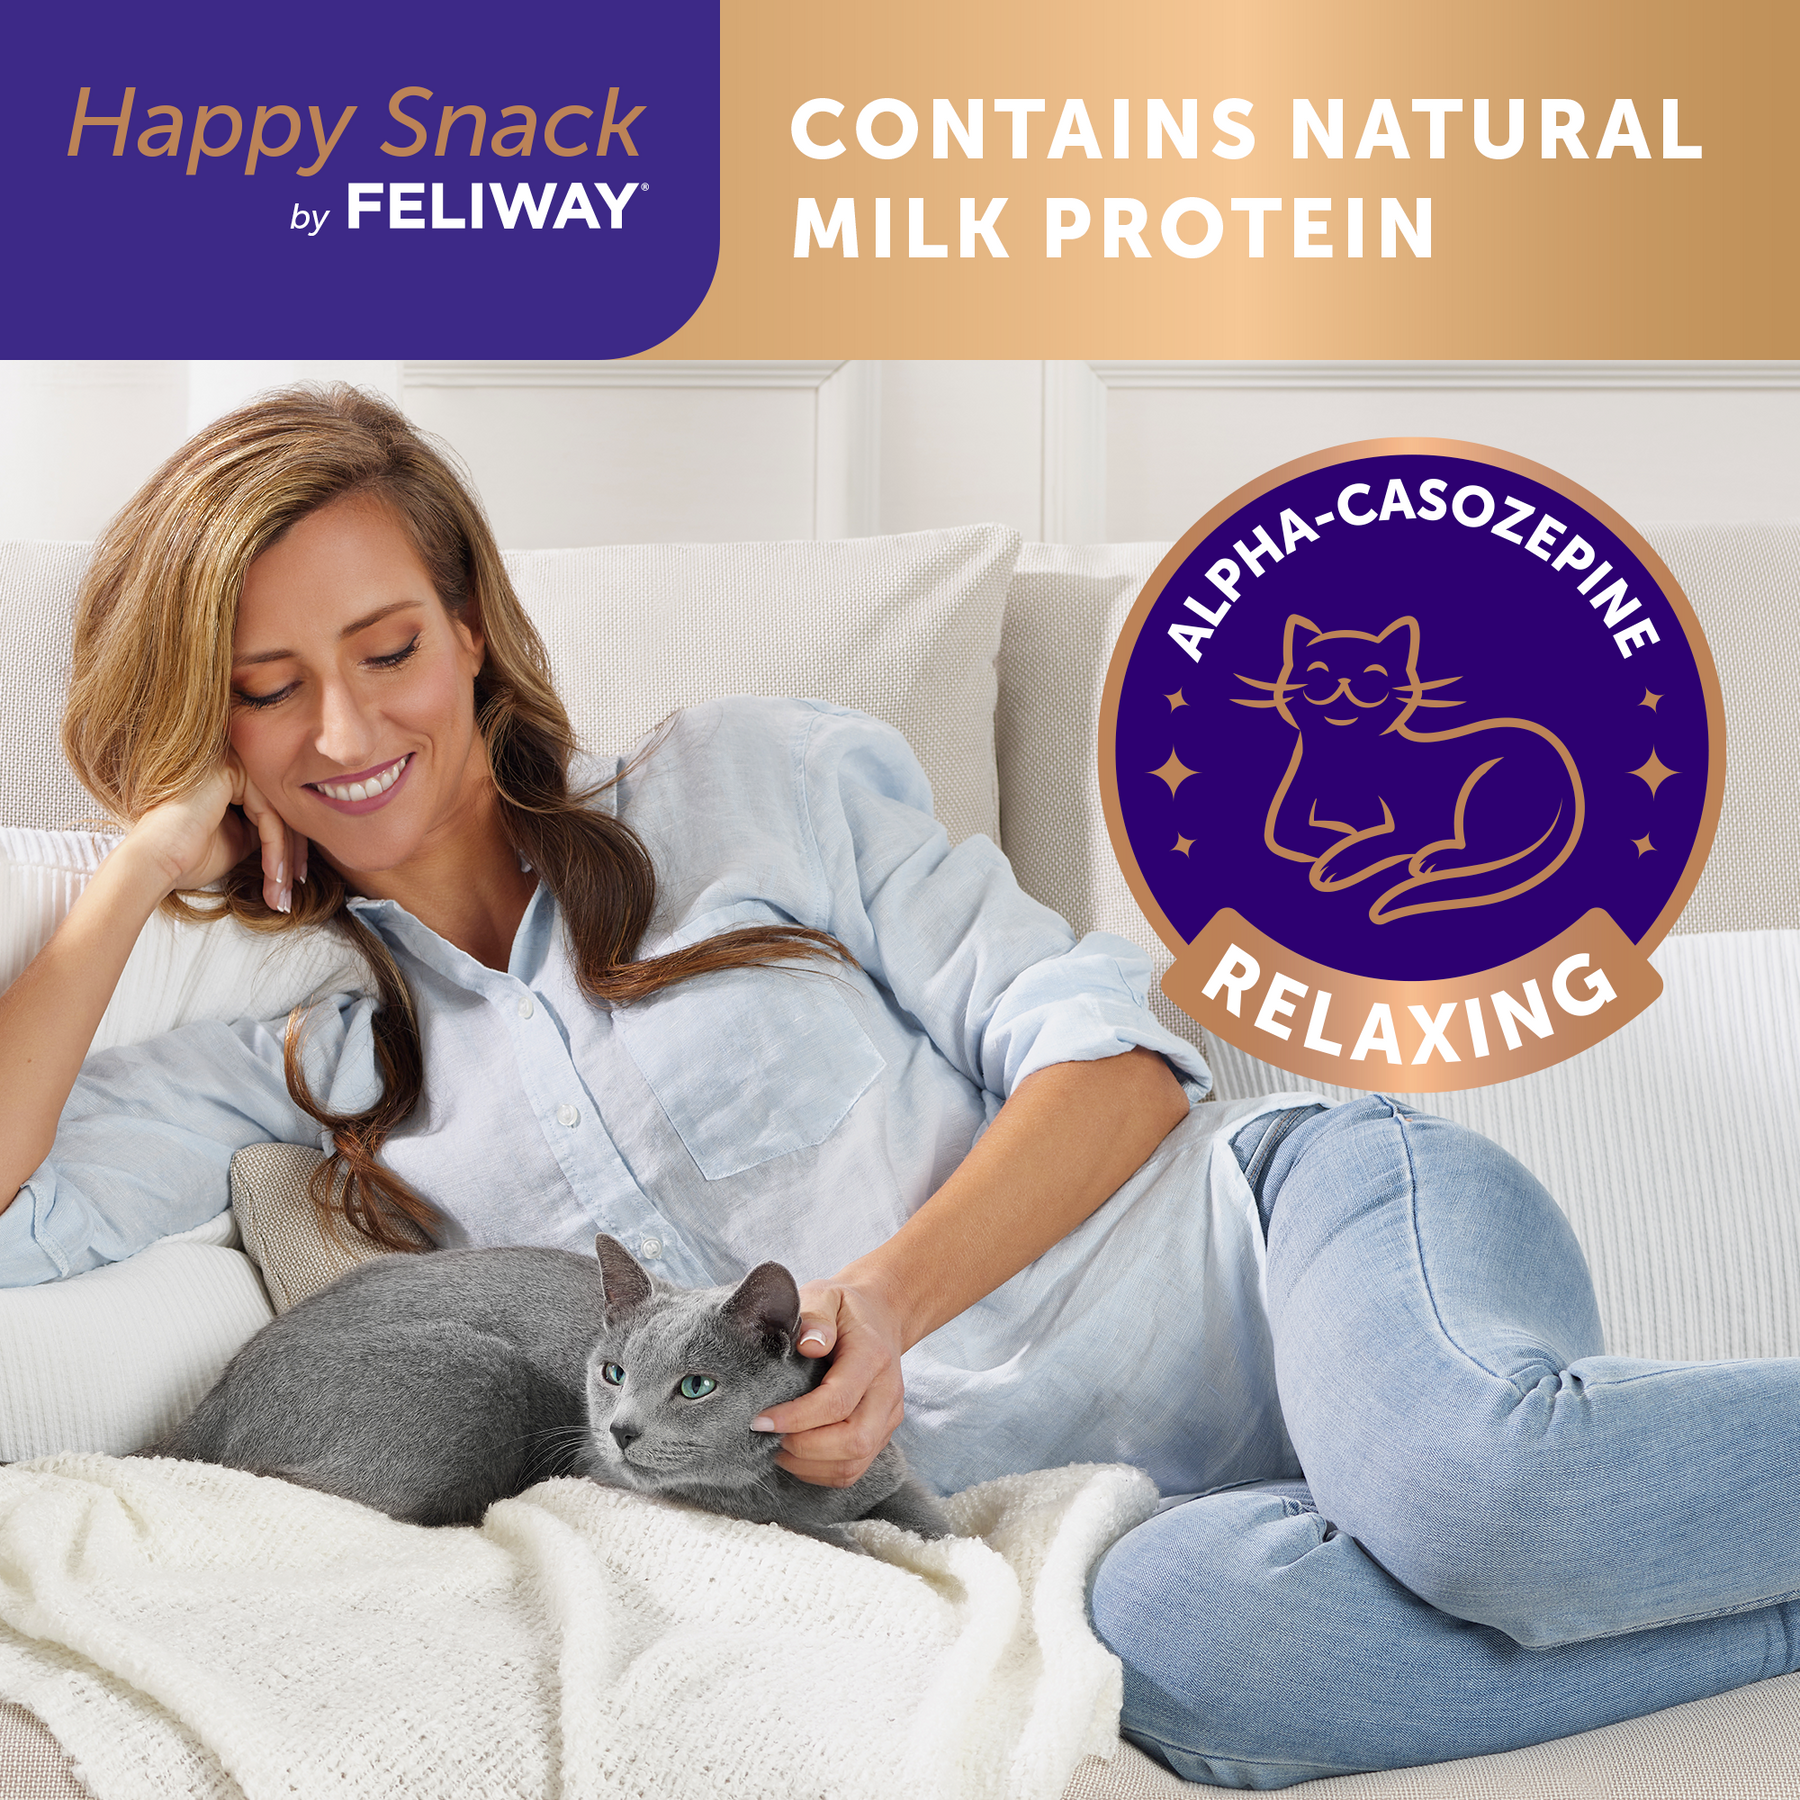 Feliway Happy Snack Calming Treats for Cats